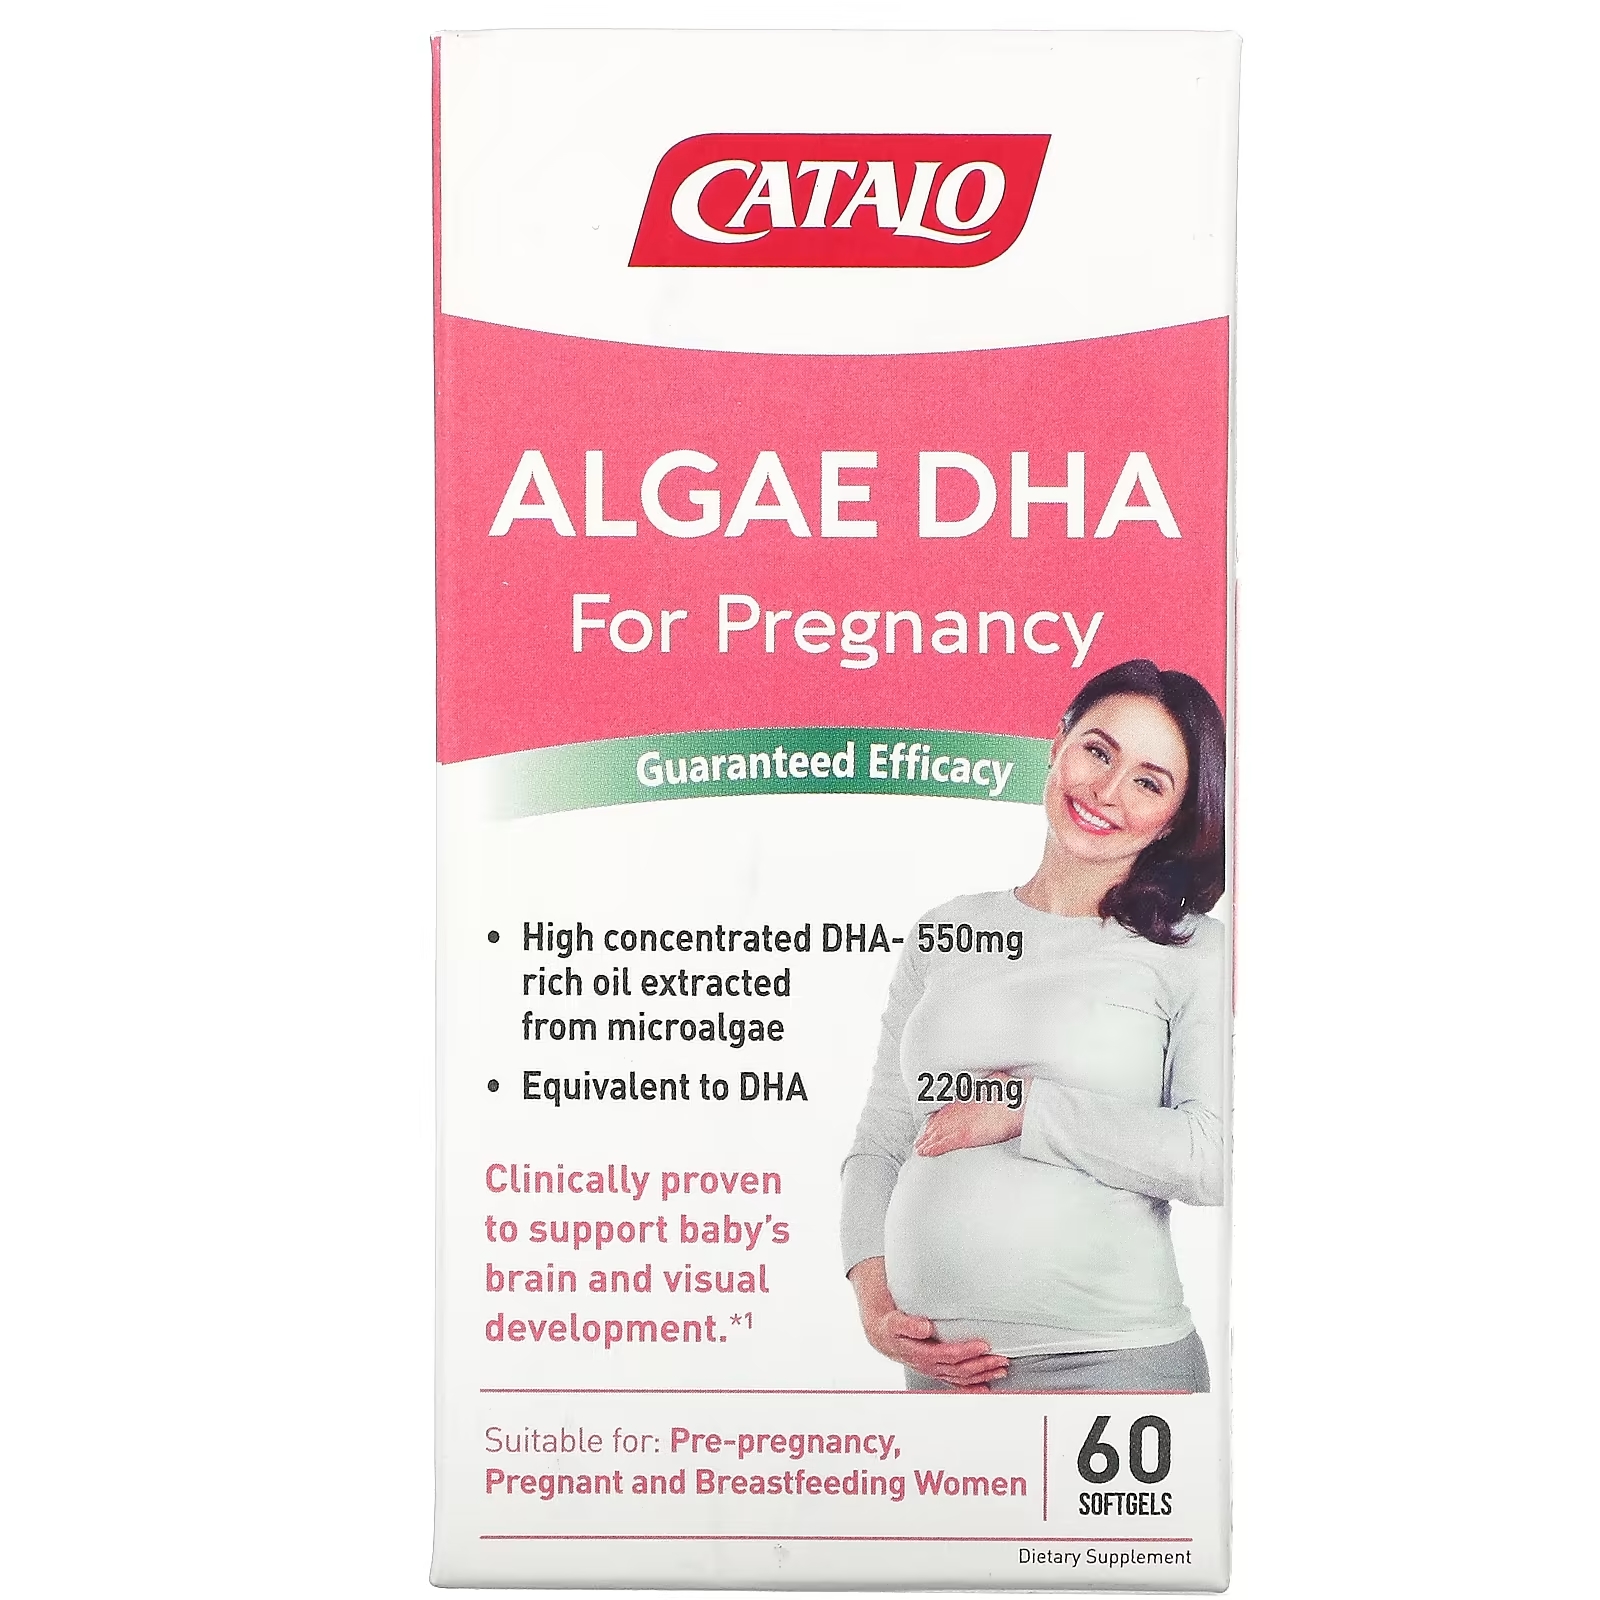 ДГК из Водорослей для Беременности Catalo Naturals, 60 мягких таблеток